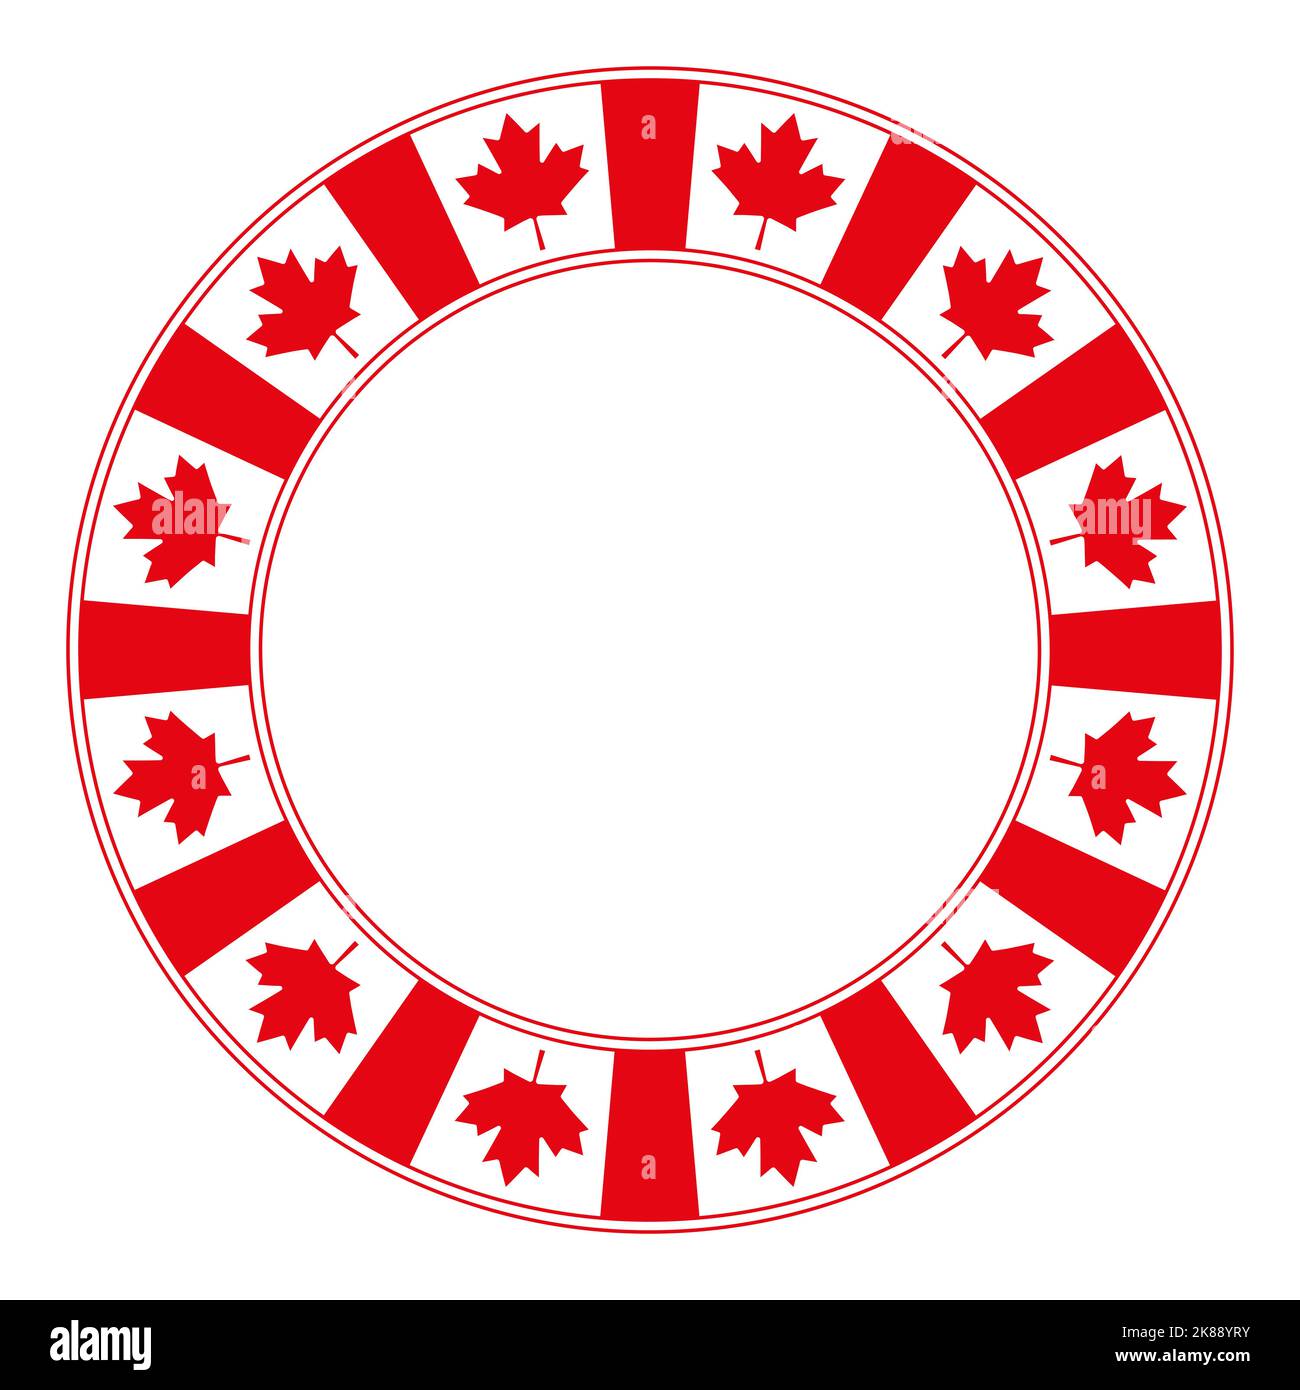 Bandiera nazionale del Canada motivo, cornice circolare. Bordo circolare decorativo, realizzato con il motivo a bandiera canadese, noto anche come foglia d'acero. Foto Stock